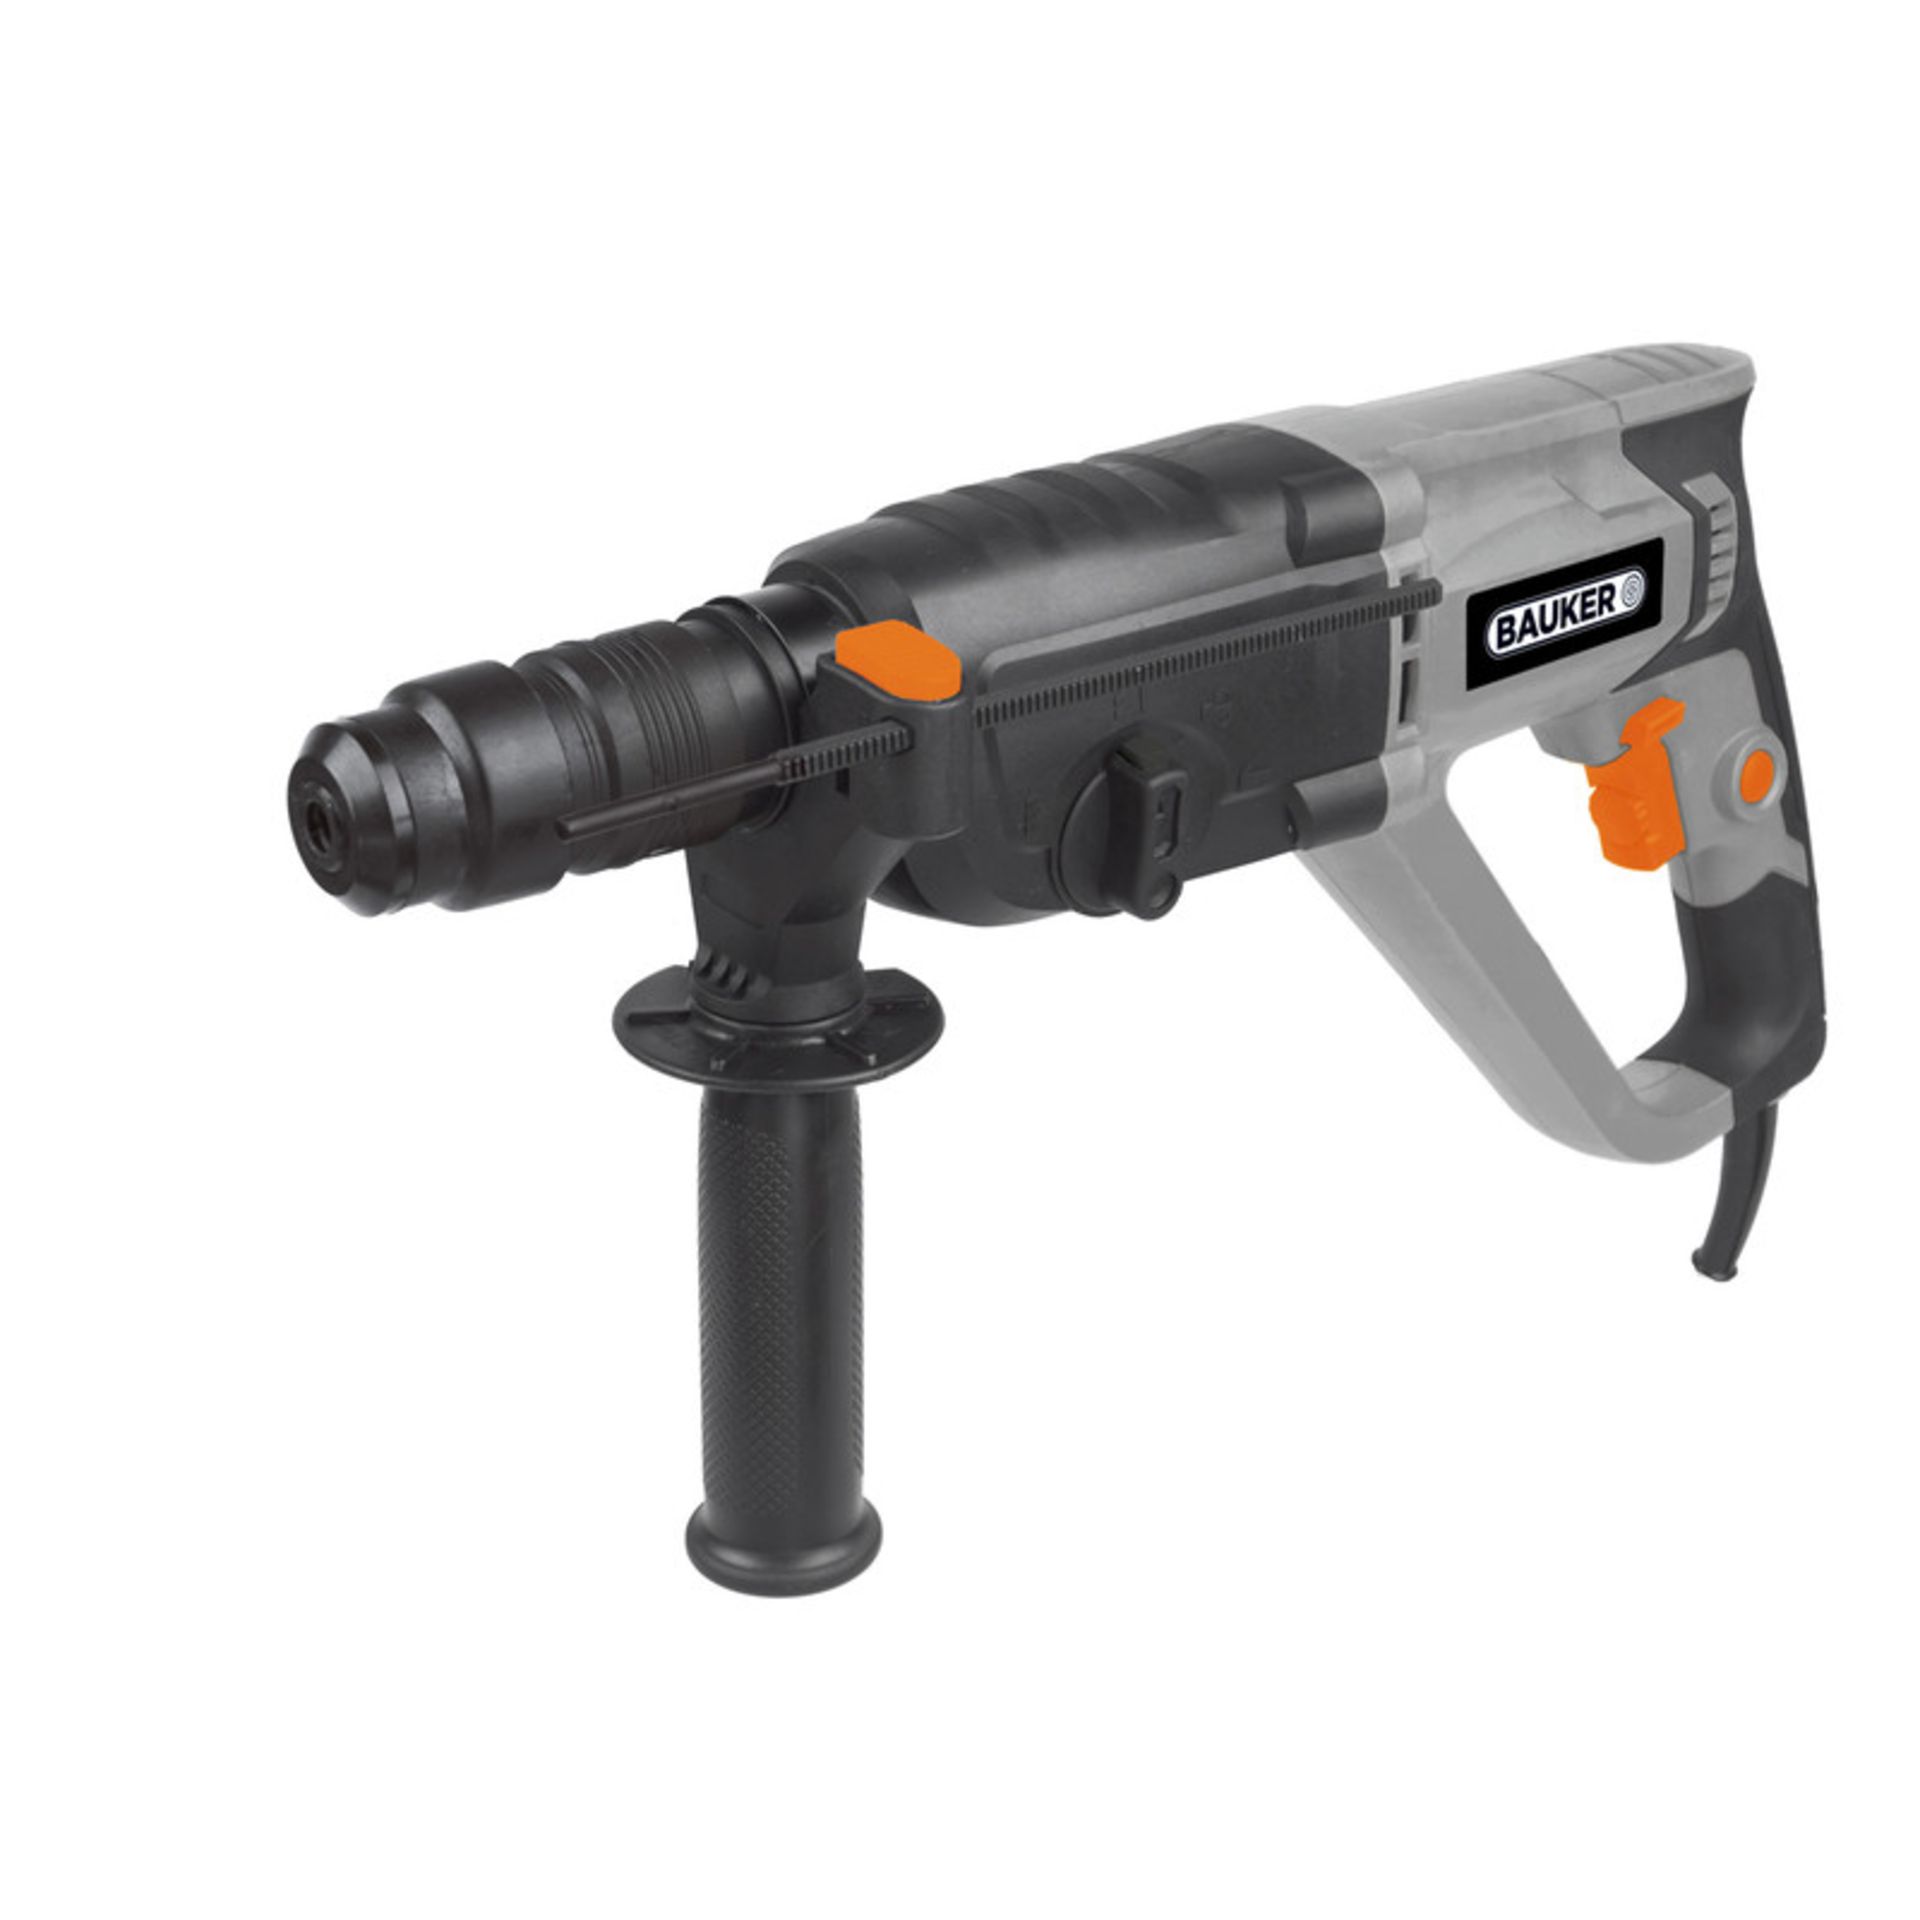 Bauker 1100W 3 Function SDS+ Hammer Drill 240V. • 3 function: drill, hammer drill, chisel • No - Image 2 of 2